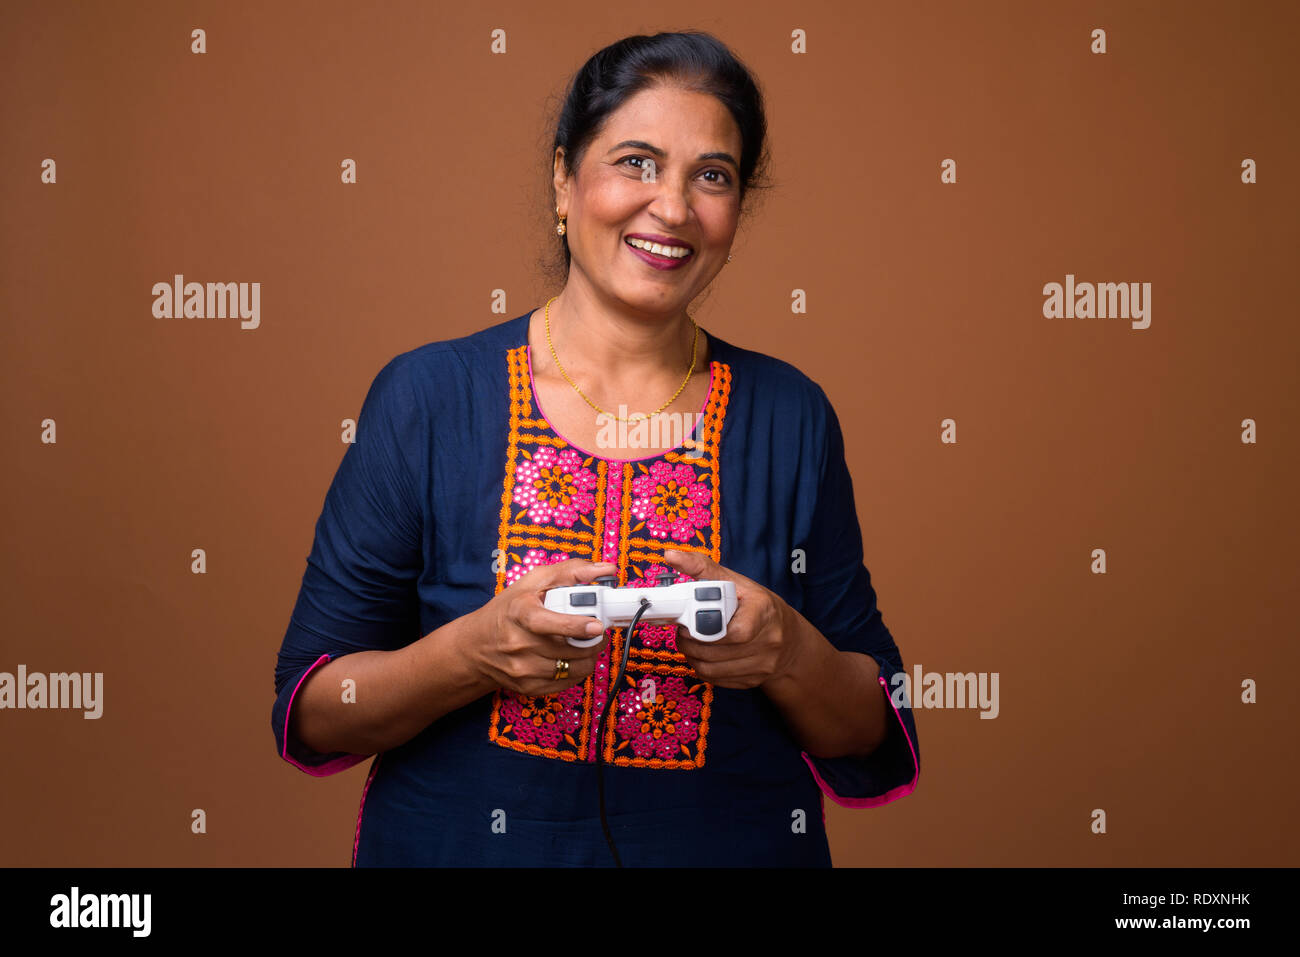 Mujer india jugando juegos de video usando game controller Foto de stock